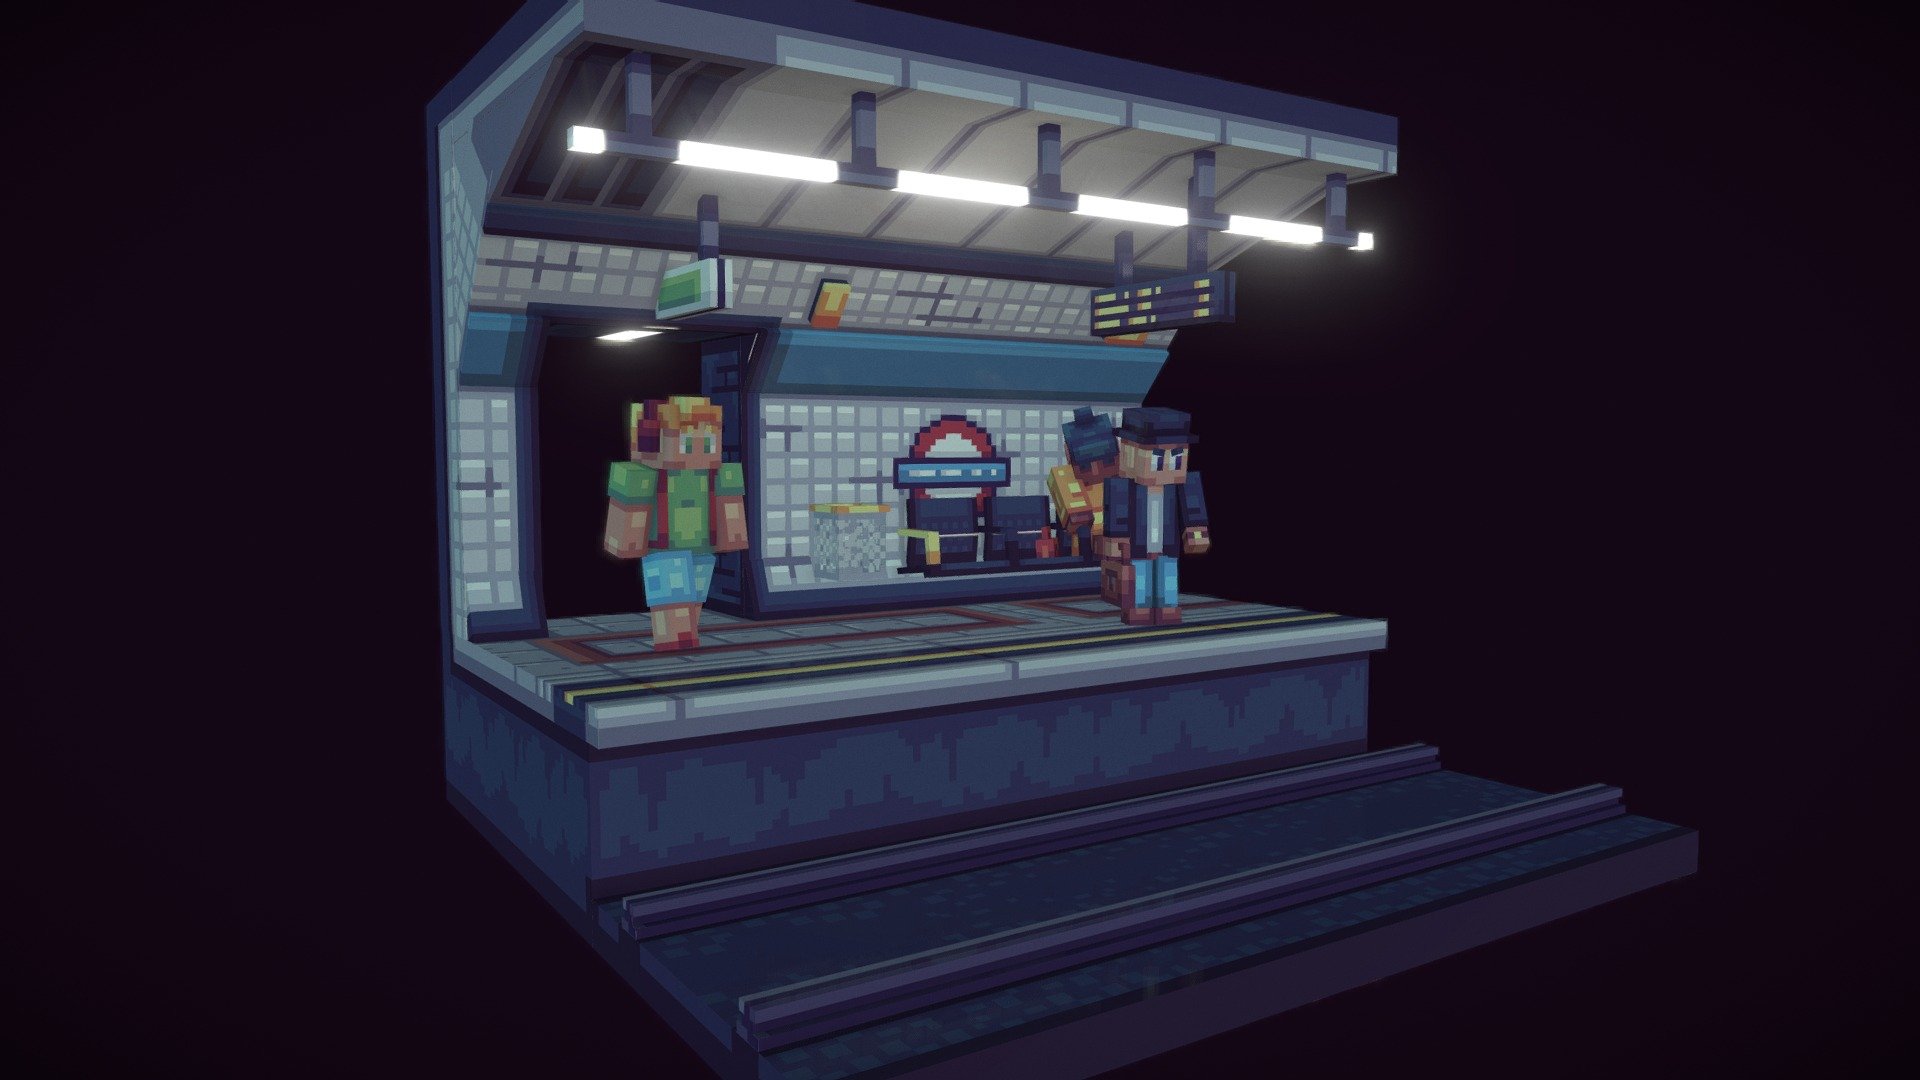 The ol' tube - London Underground Metro Station - 3D model by BOXjordiHEAD 3d model